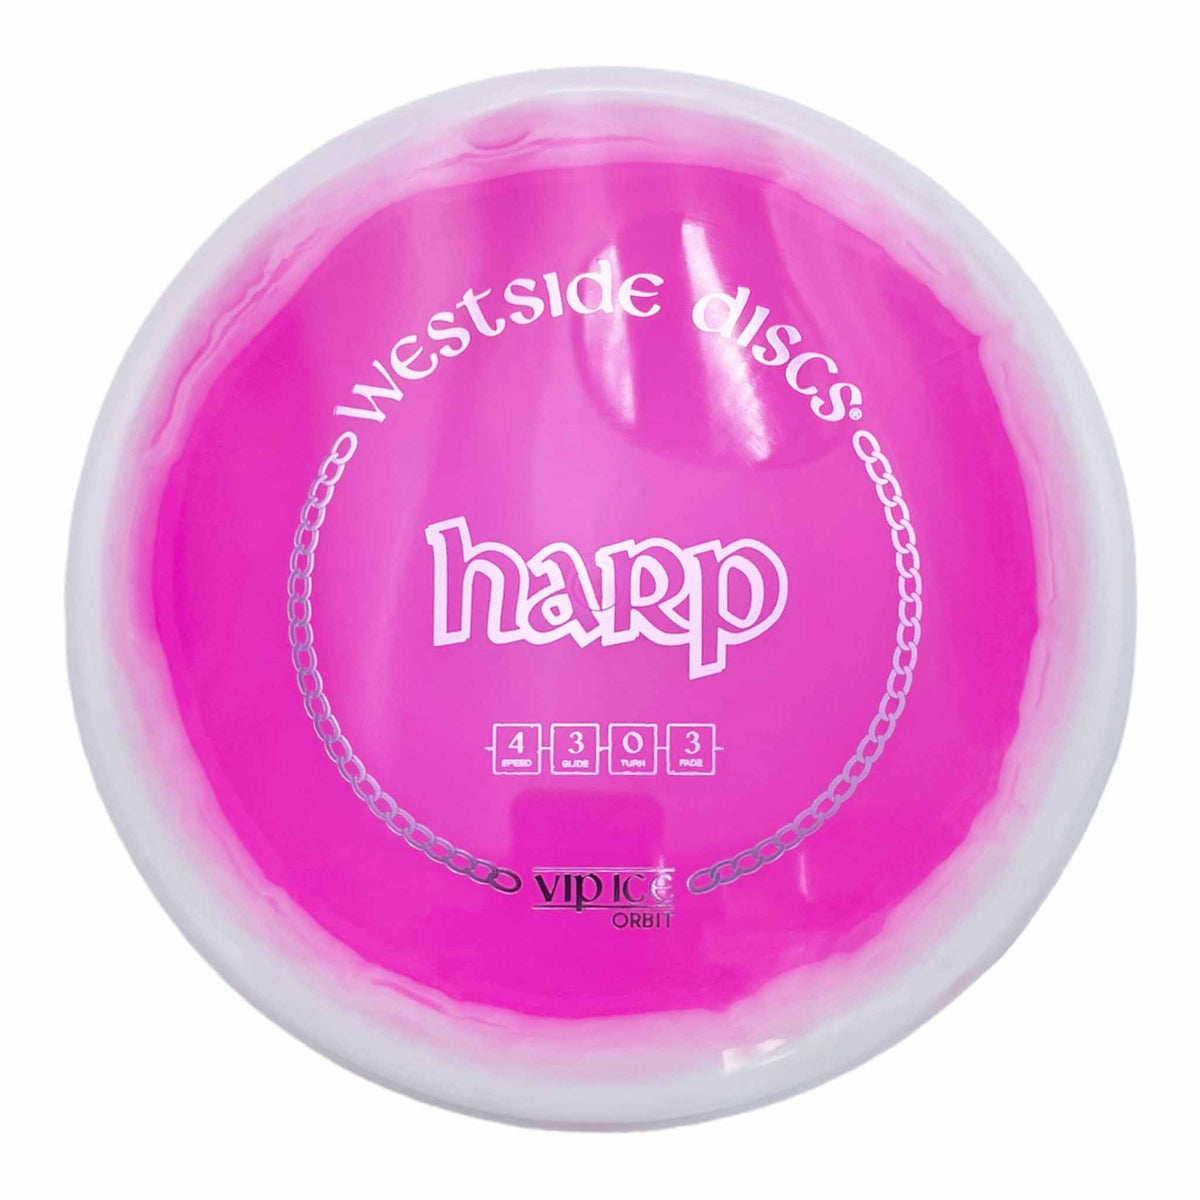 Westside Discs VIP Ice Orbit Harp midrange putter - Pink